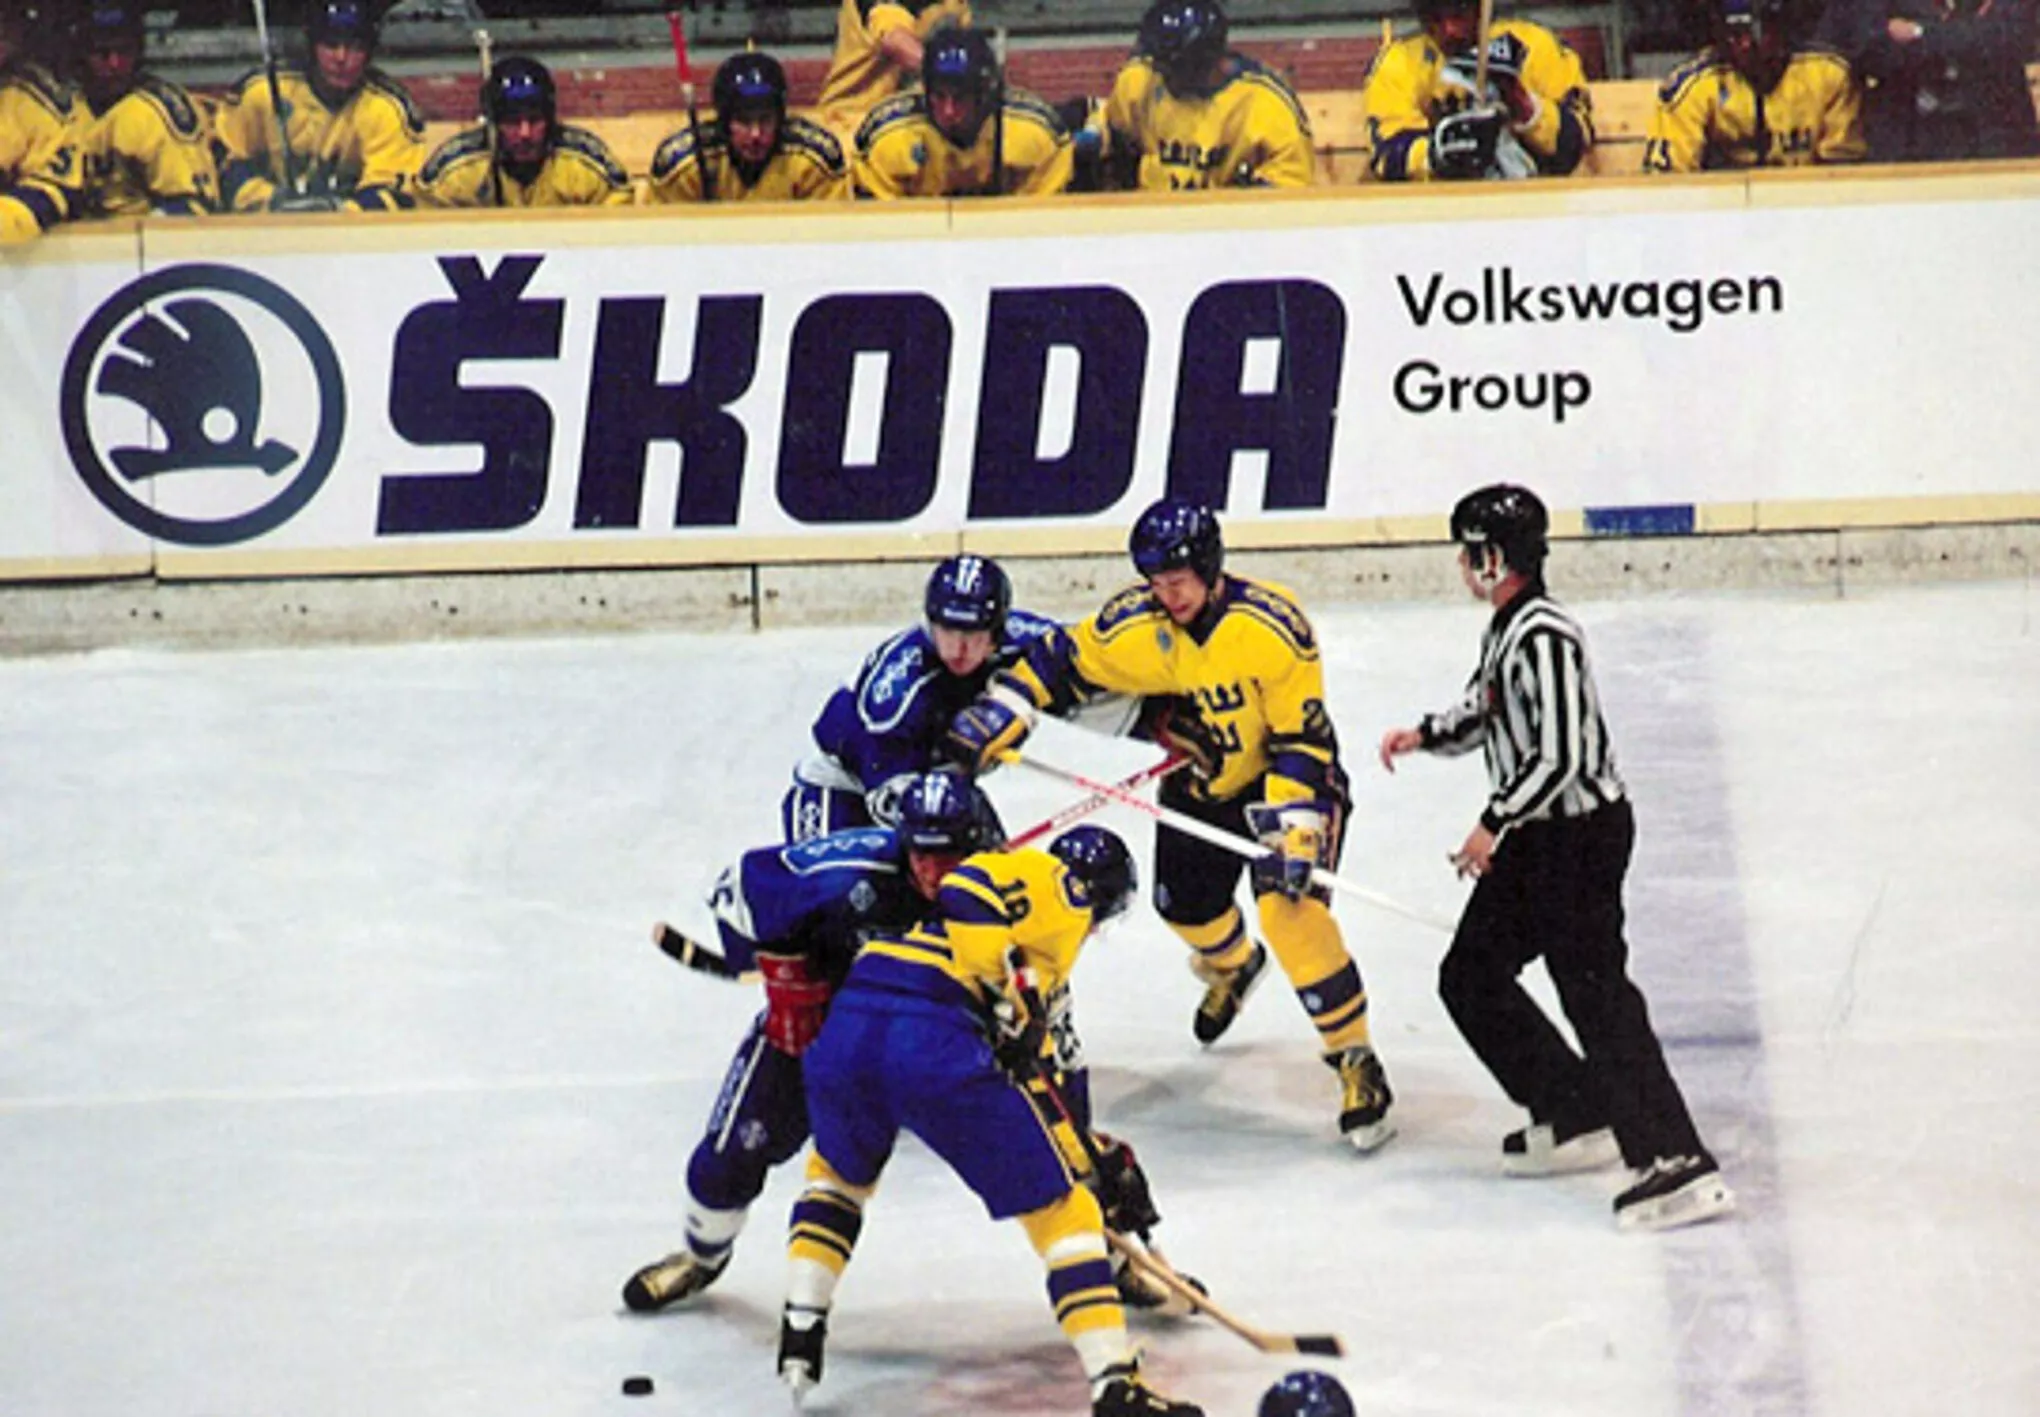 CP - ŠKODA AUTO 30 ans de partenariat avec le Championnat du Monde de Hockey sur Glace